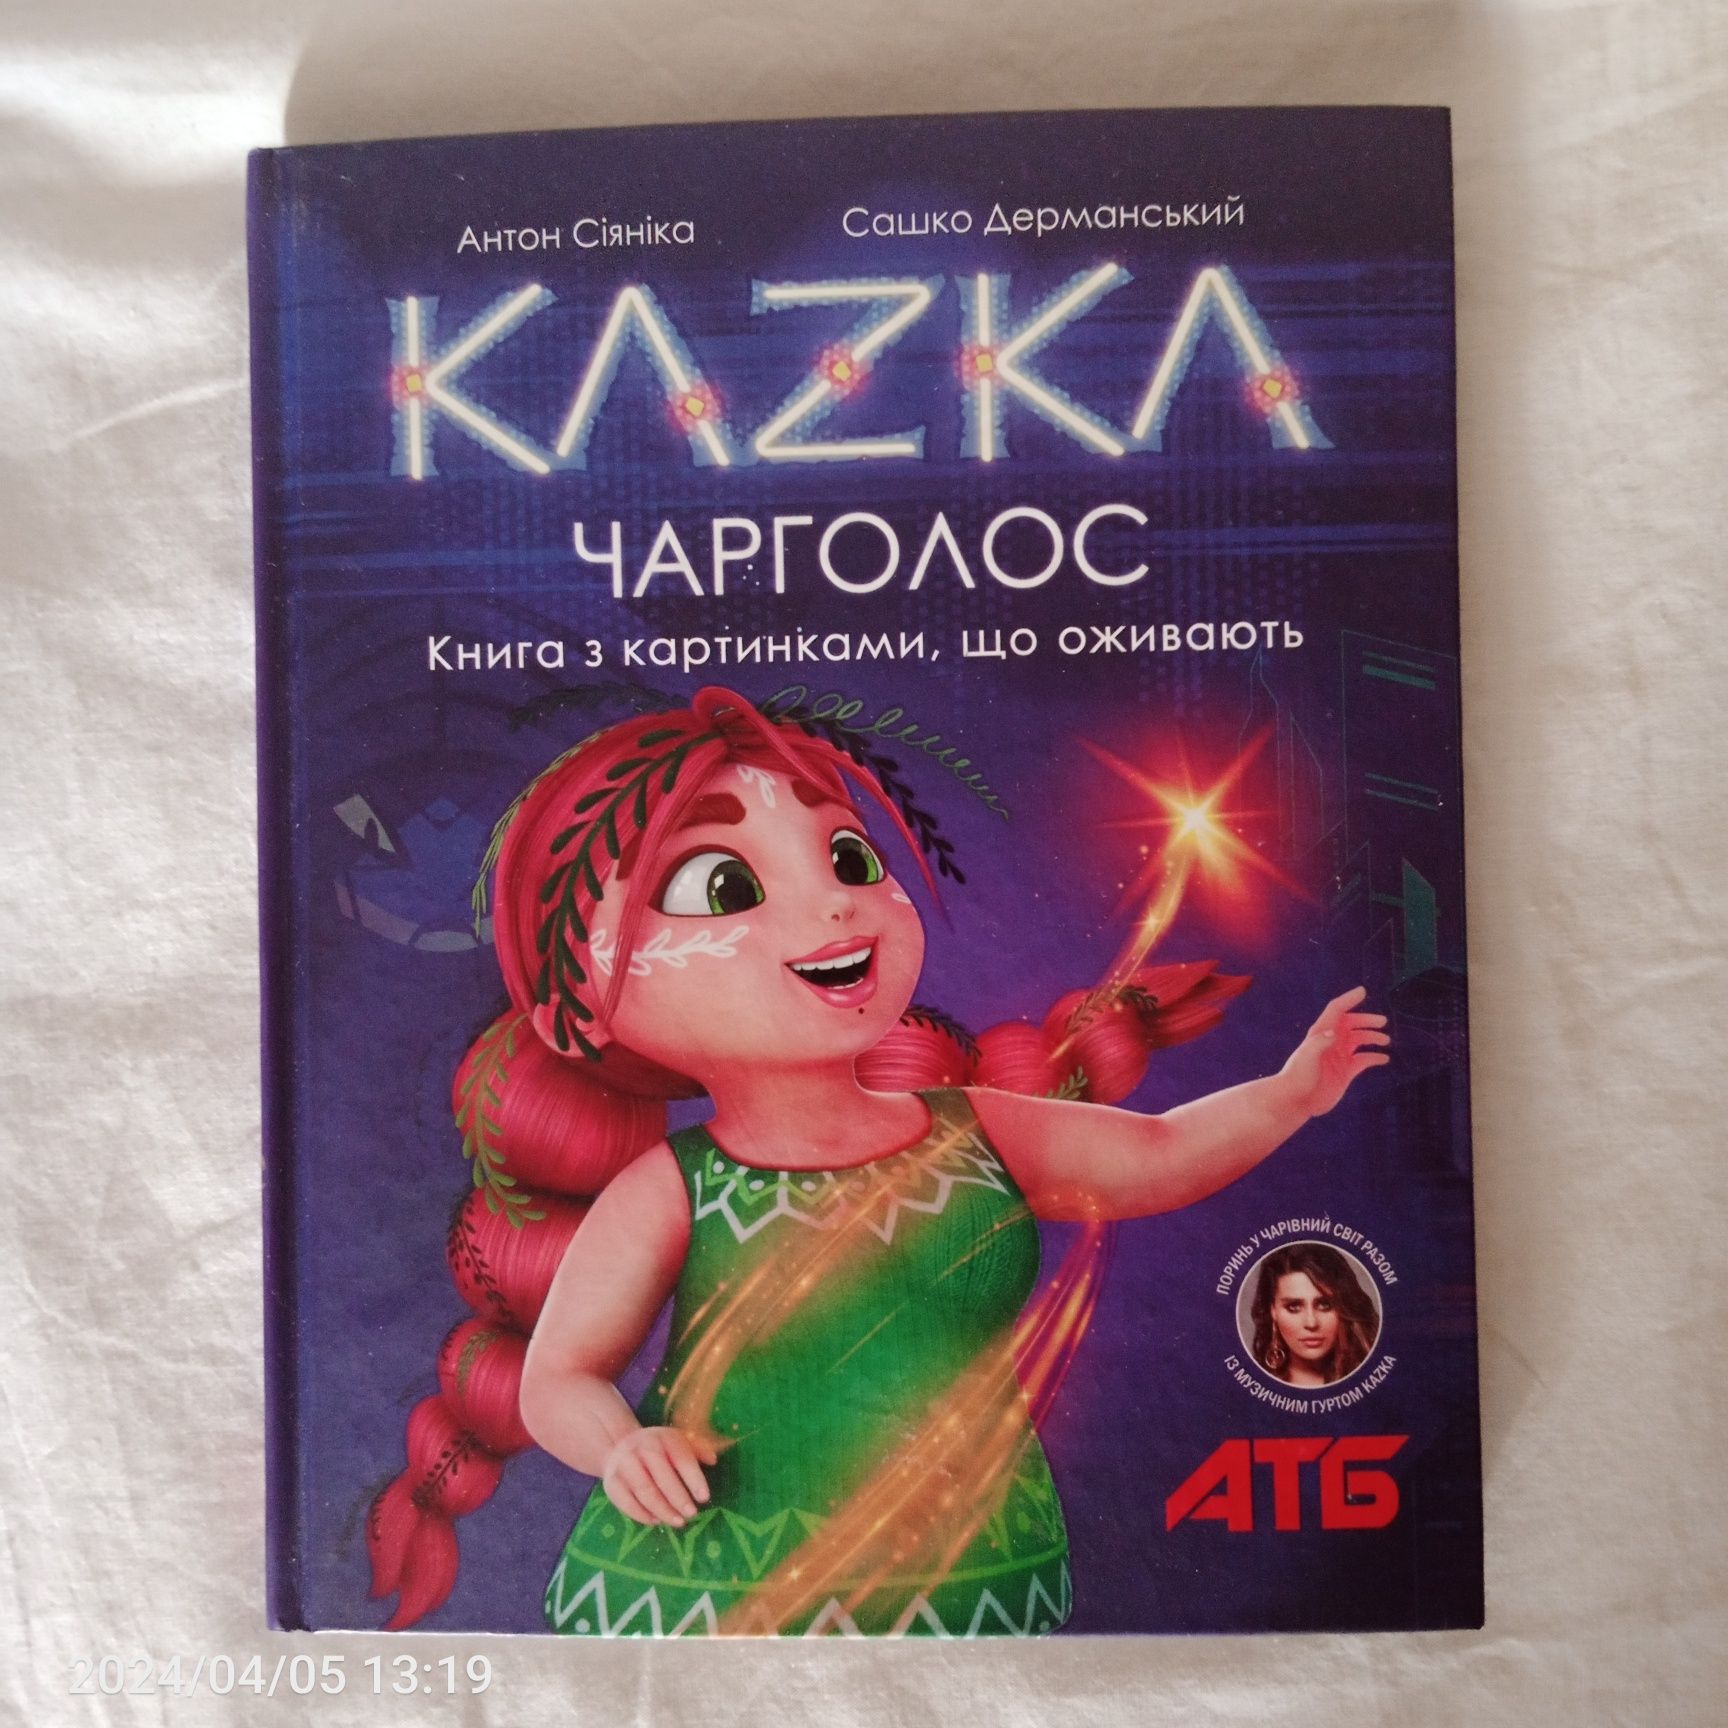 Очки виртуальной реальности для смартфона + новая книга KAZKA за 170